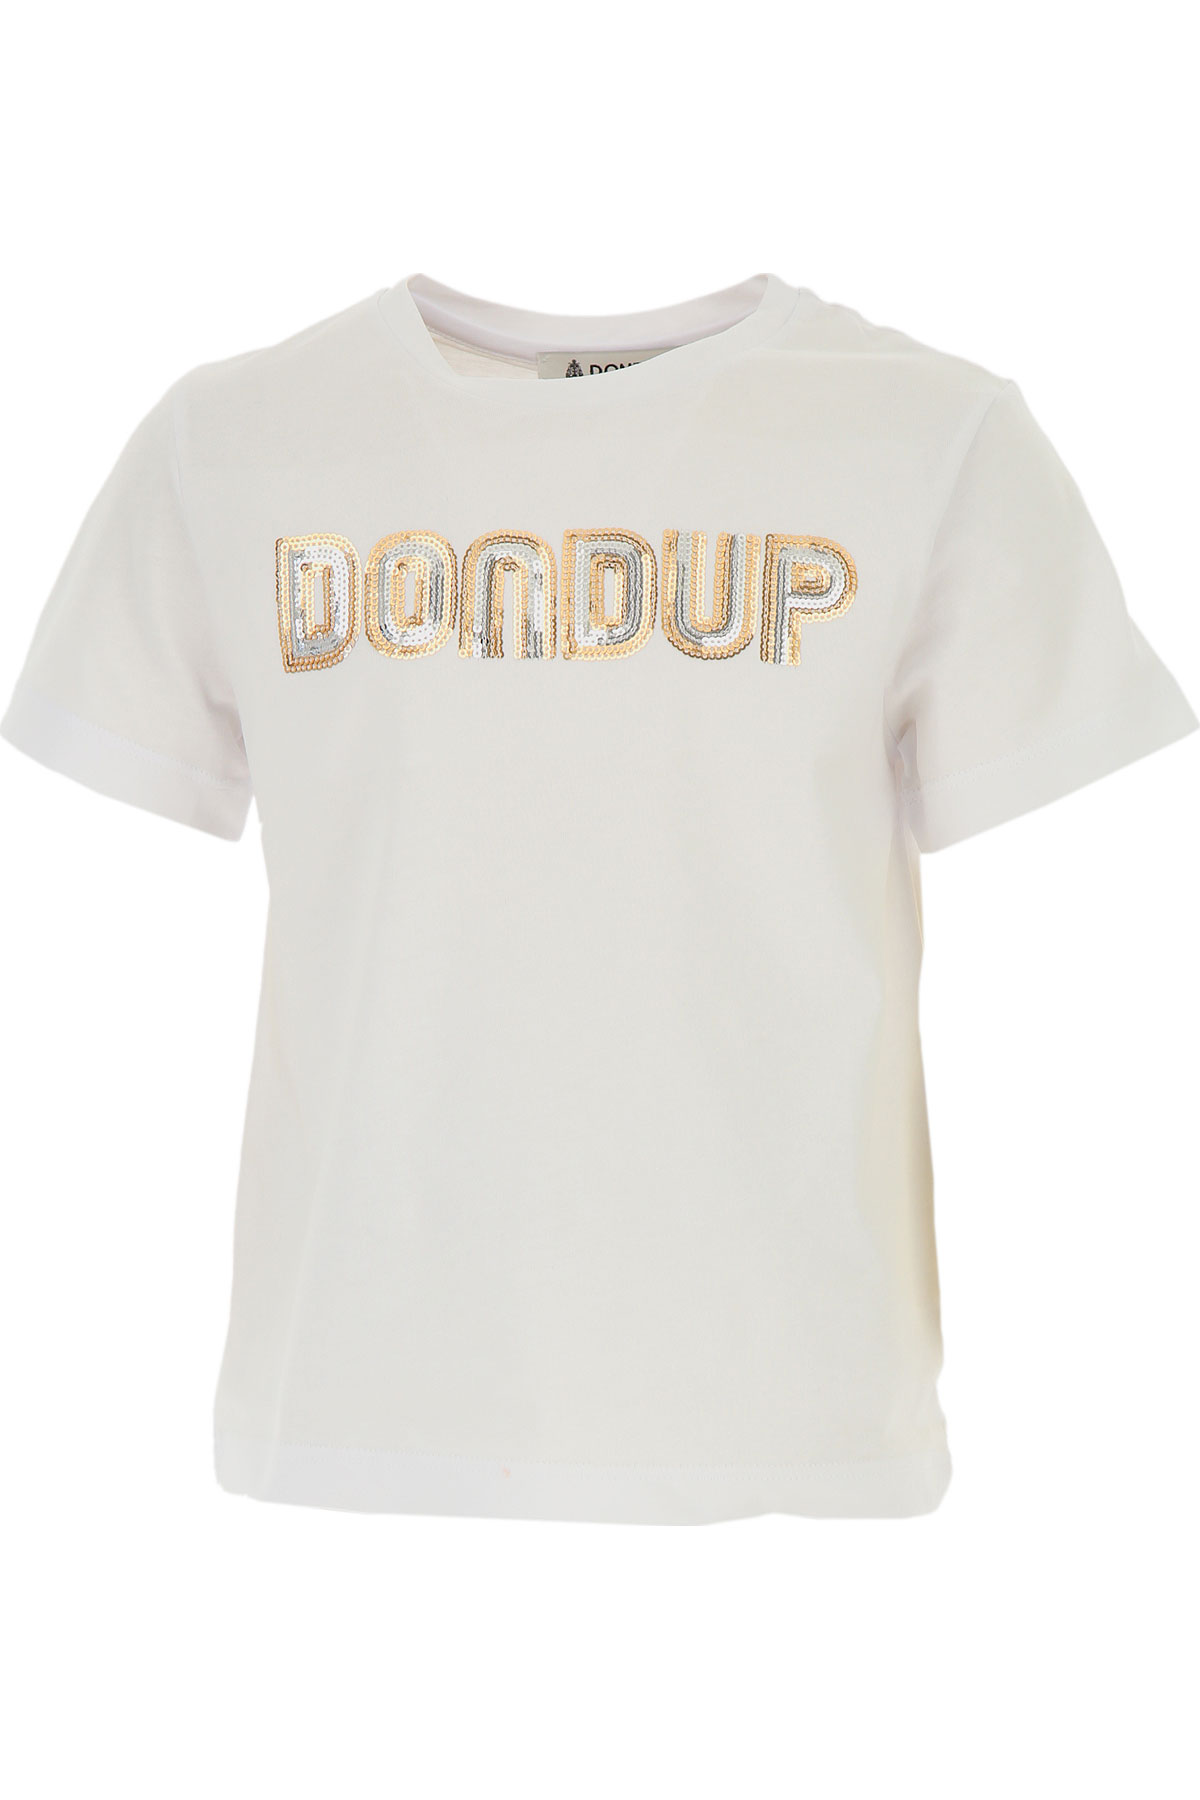 Dondup Kinder T-Shirt für Mädchen Günstig im Sale, Weiss, Baumwolle, 2017, L M S XL XS XXS